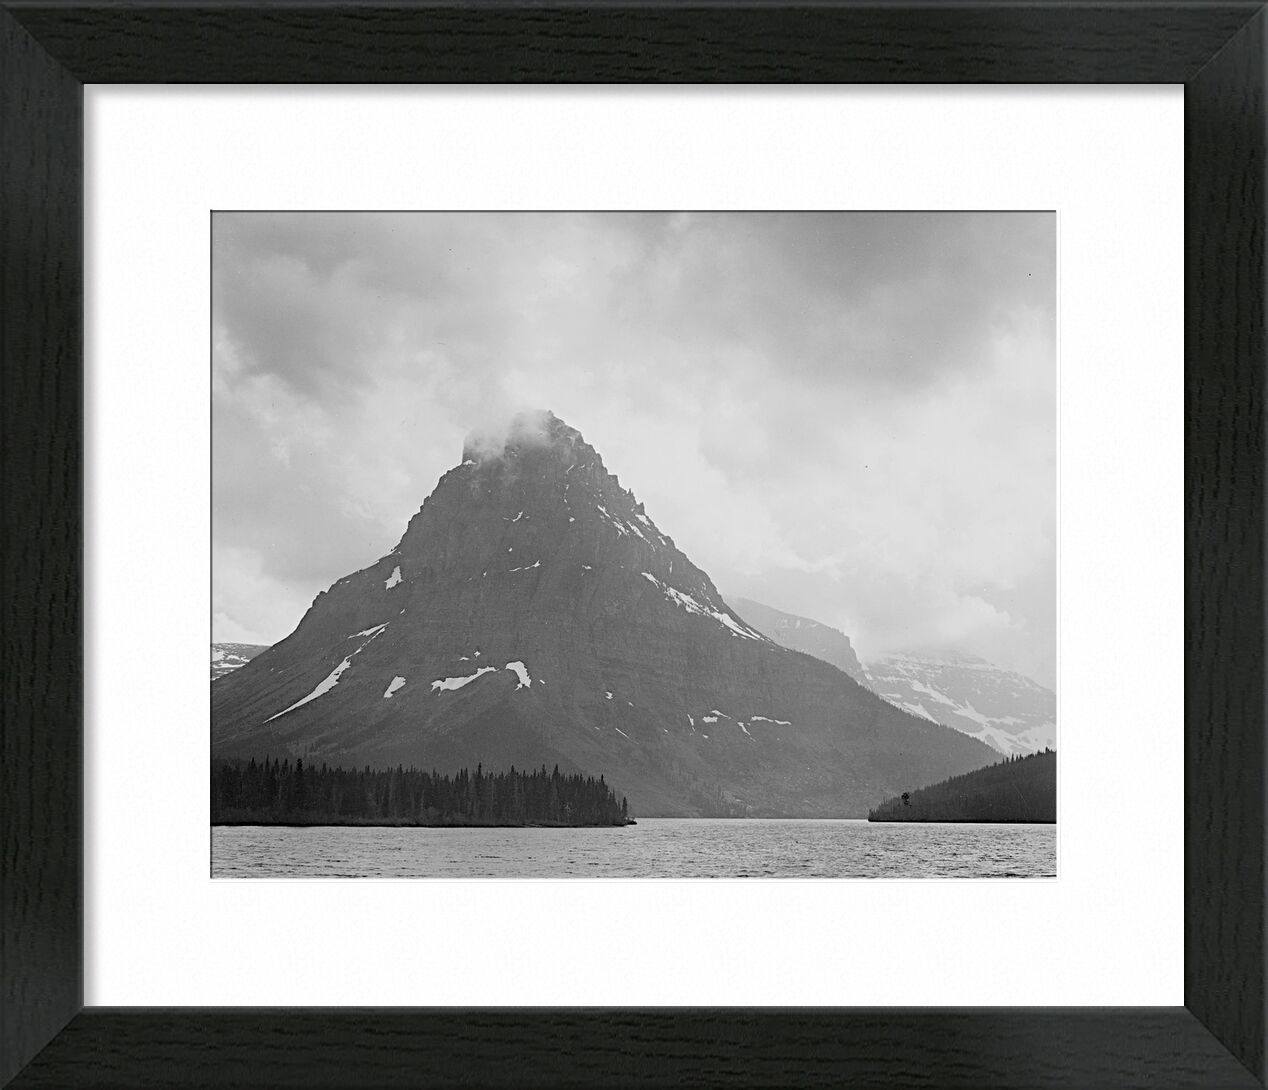 High Lone Mountain Peak Lake In Foreground - Ansel Adams von Bildende Kunst, Prodi Art, ANSEL ADAMS, Berge, Winter, Schnee, Schwarz und weiß